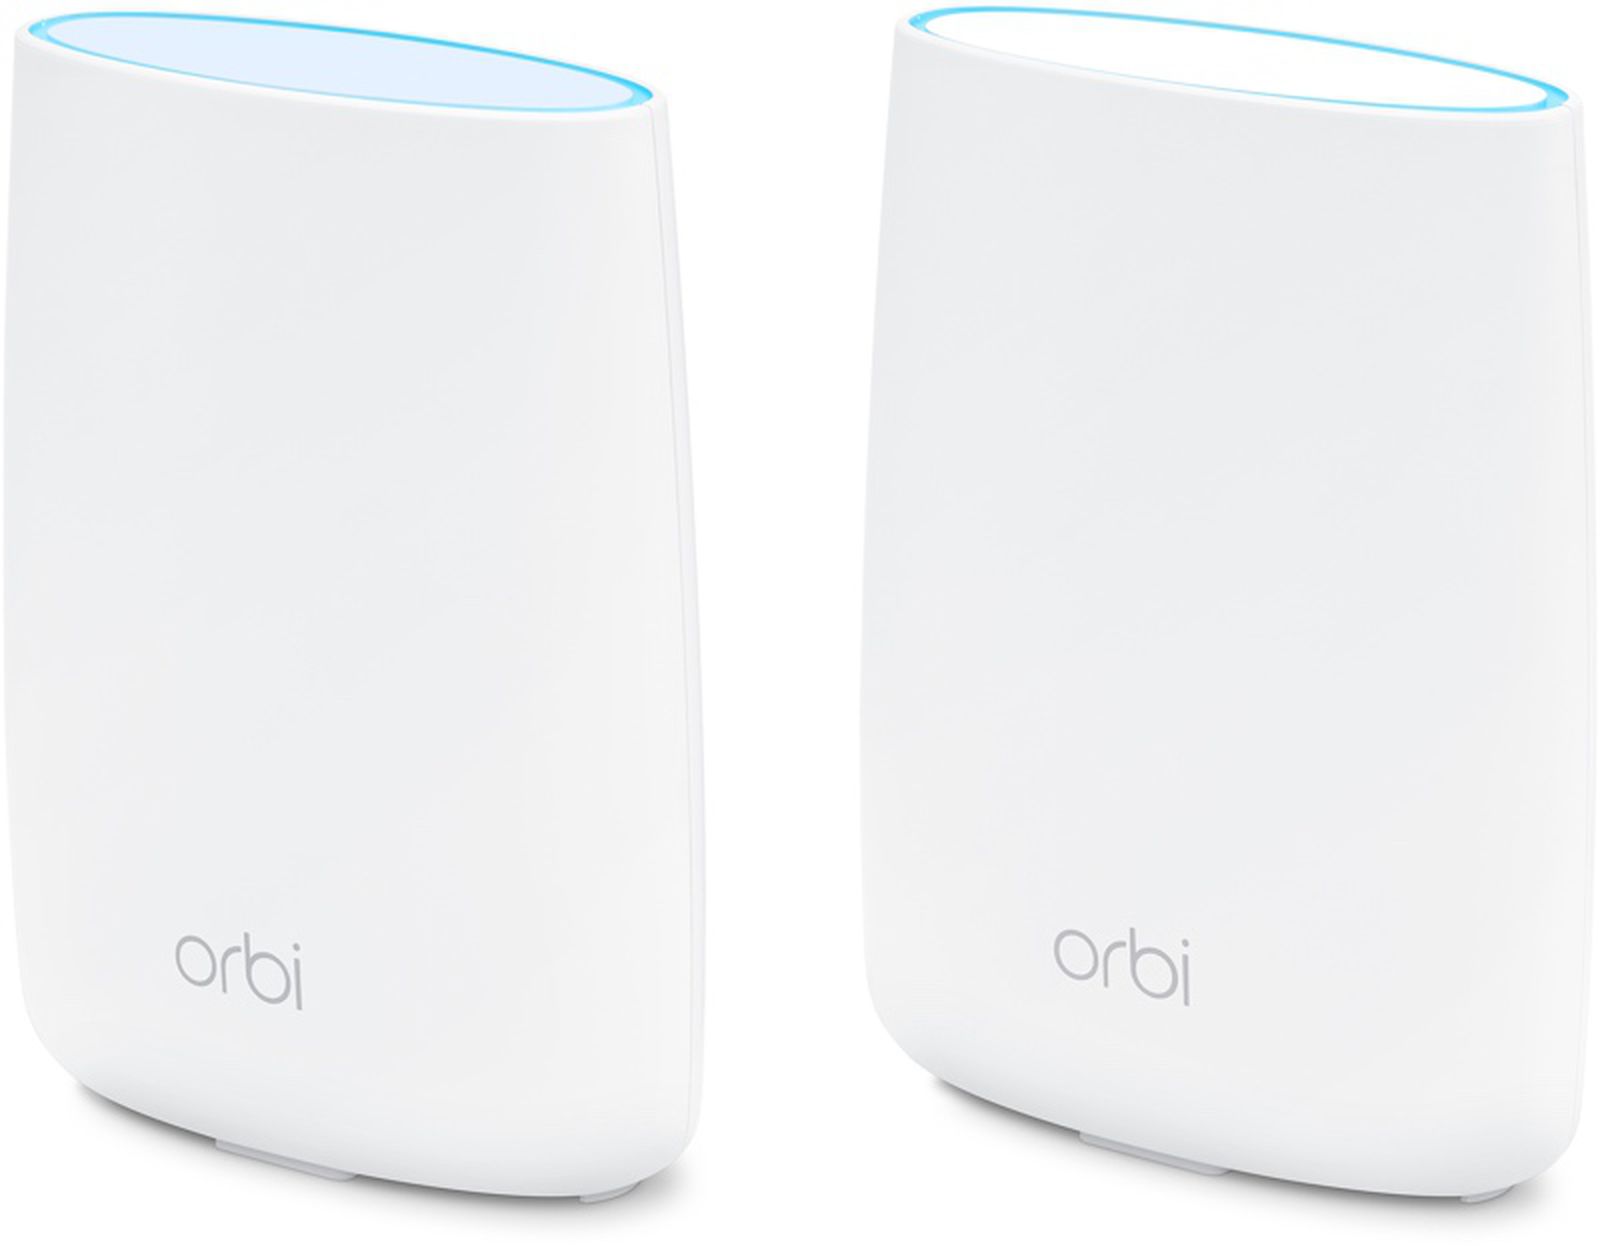 gevechten Touhou Opgewonden zijn Netgear's Orbi Mesh Wi-Fi Routers Now Available From Apple - MacRumors